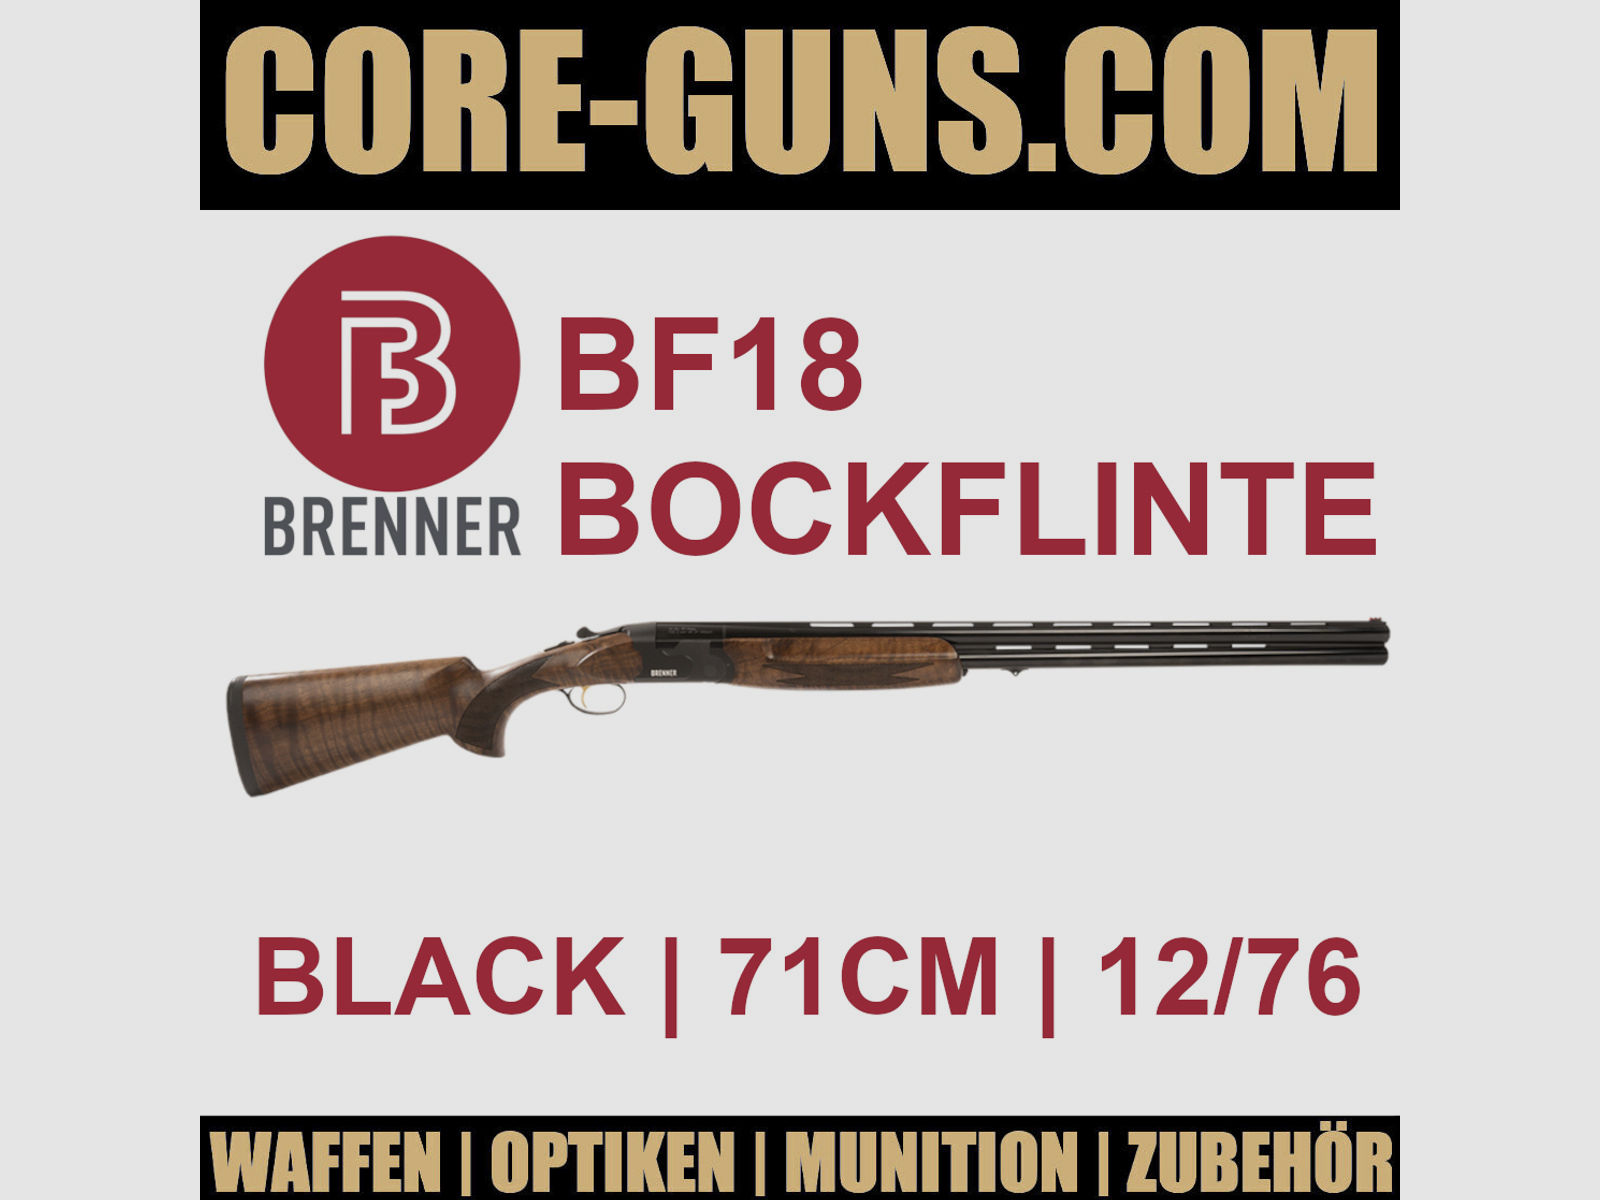 Brenner BF18 black 71cm Brenner Bockflinte Kaliber 12/76